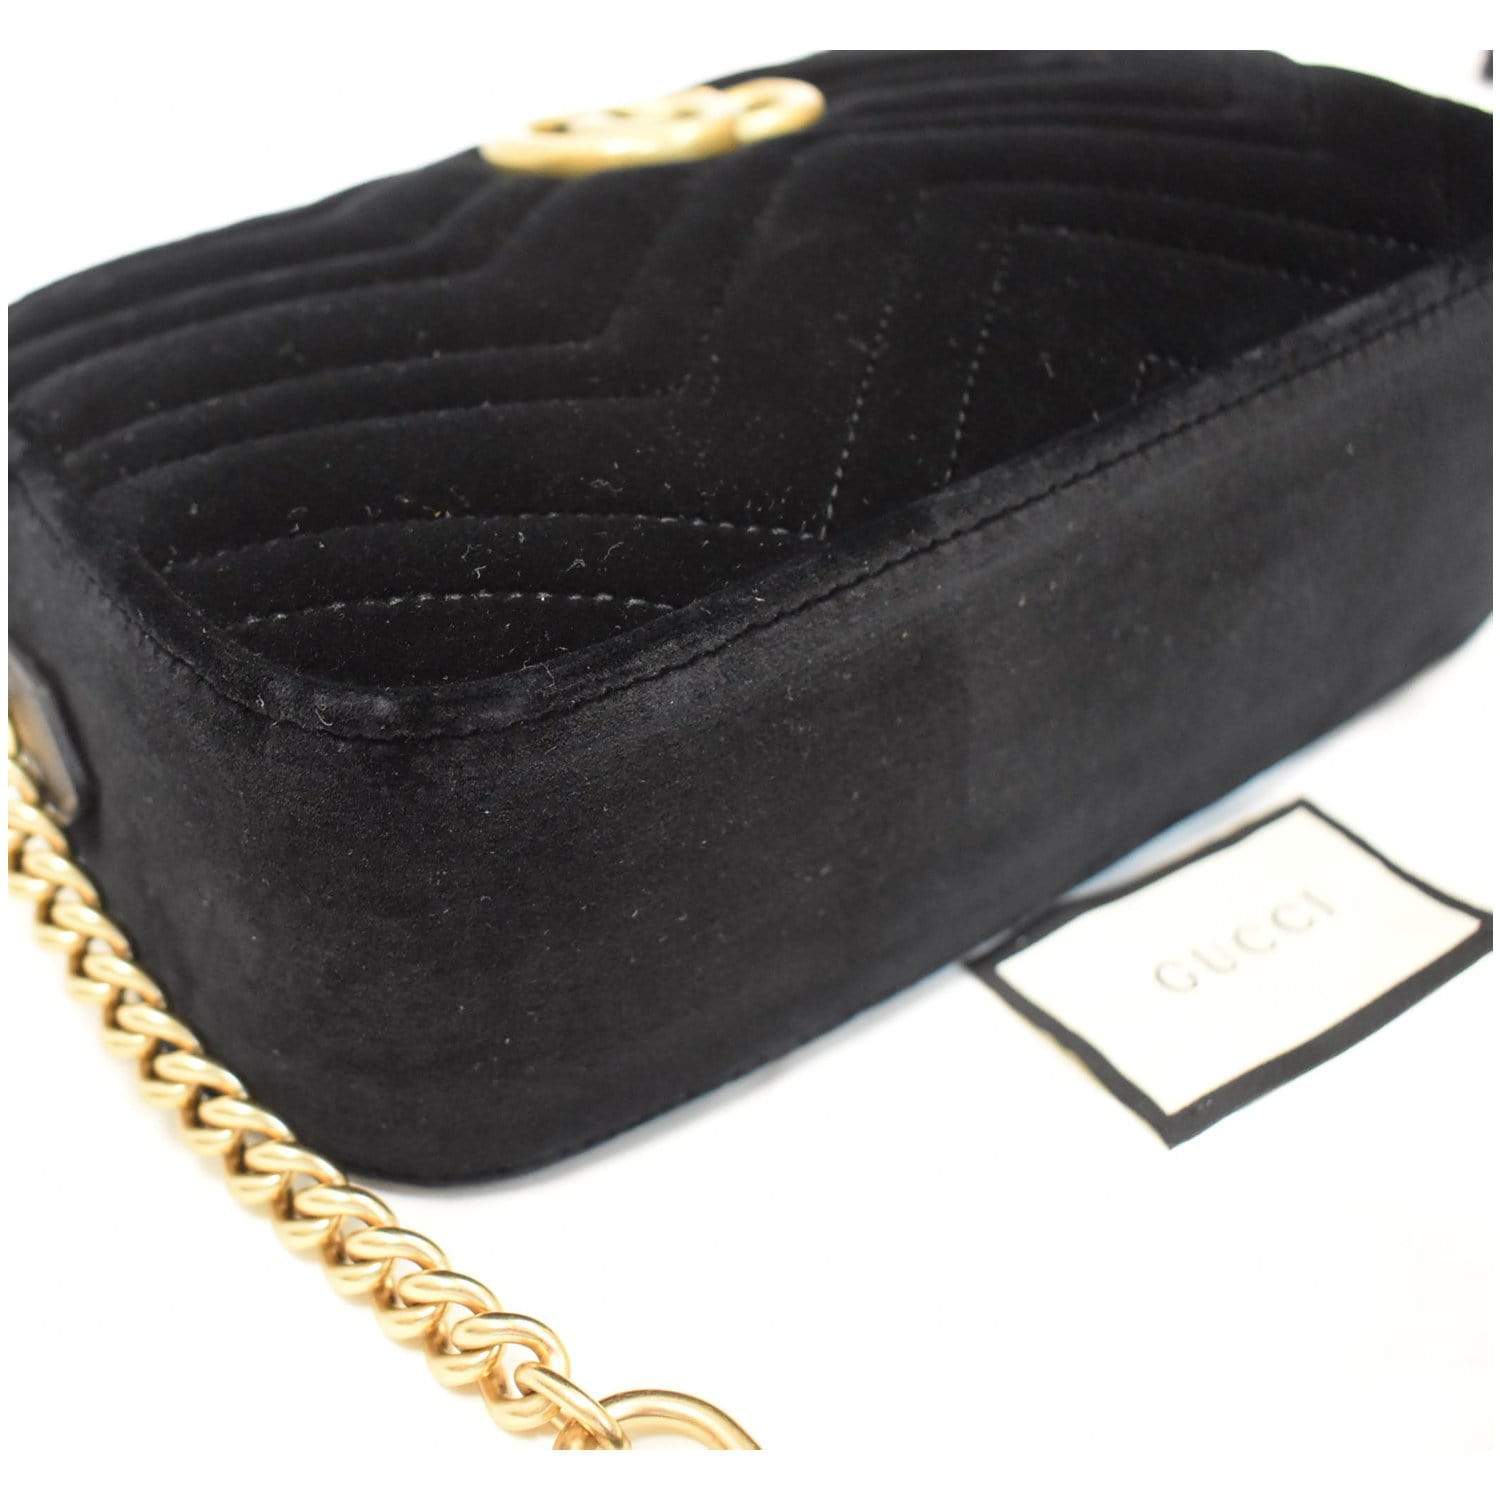 Gg marmont velvet handbag Gucci Red in Velvet - 22170472